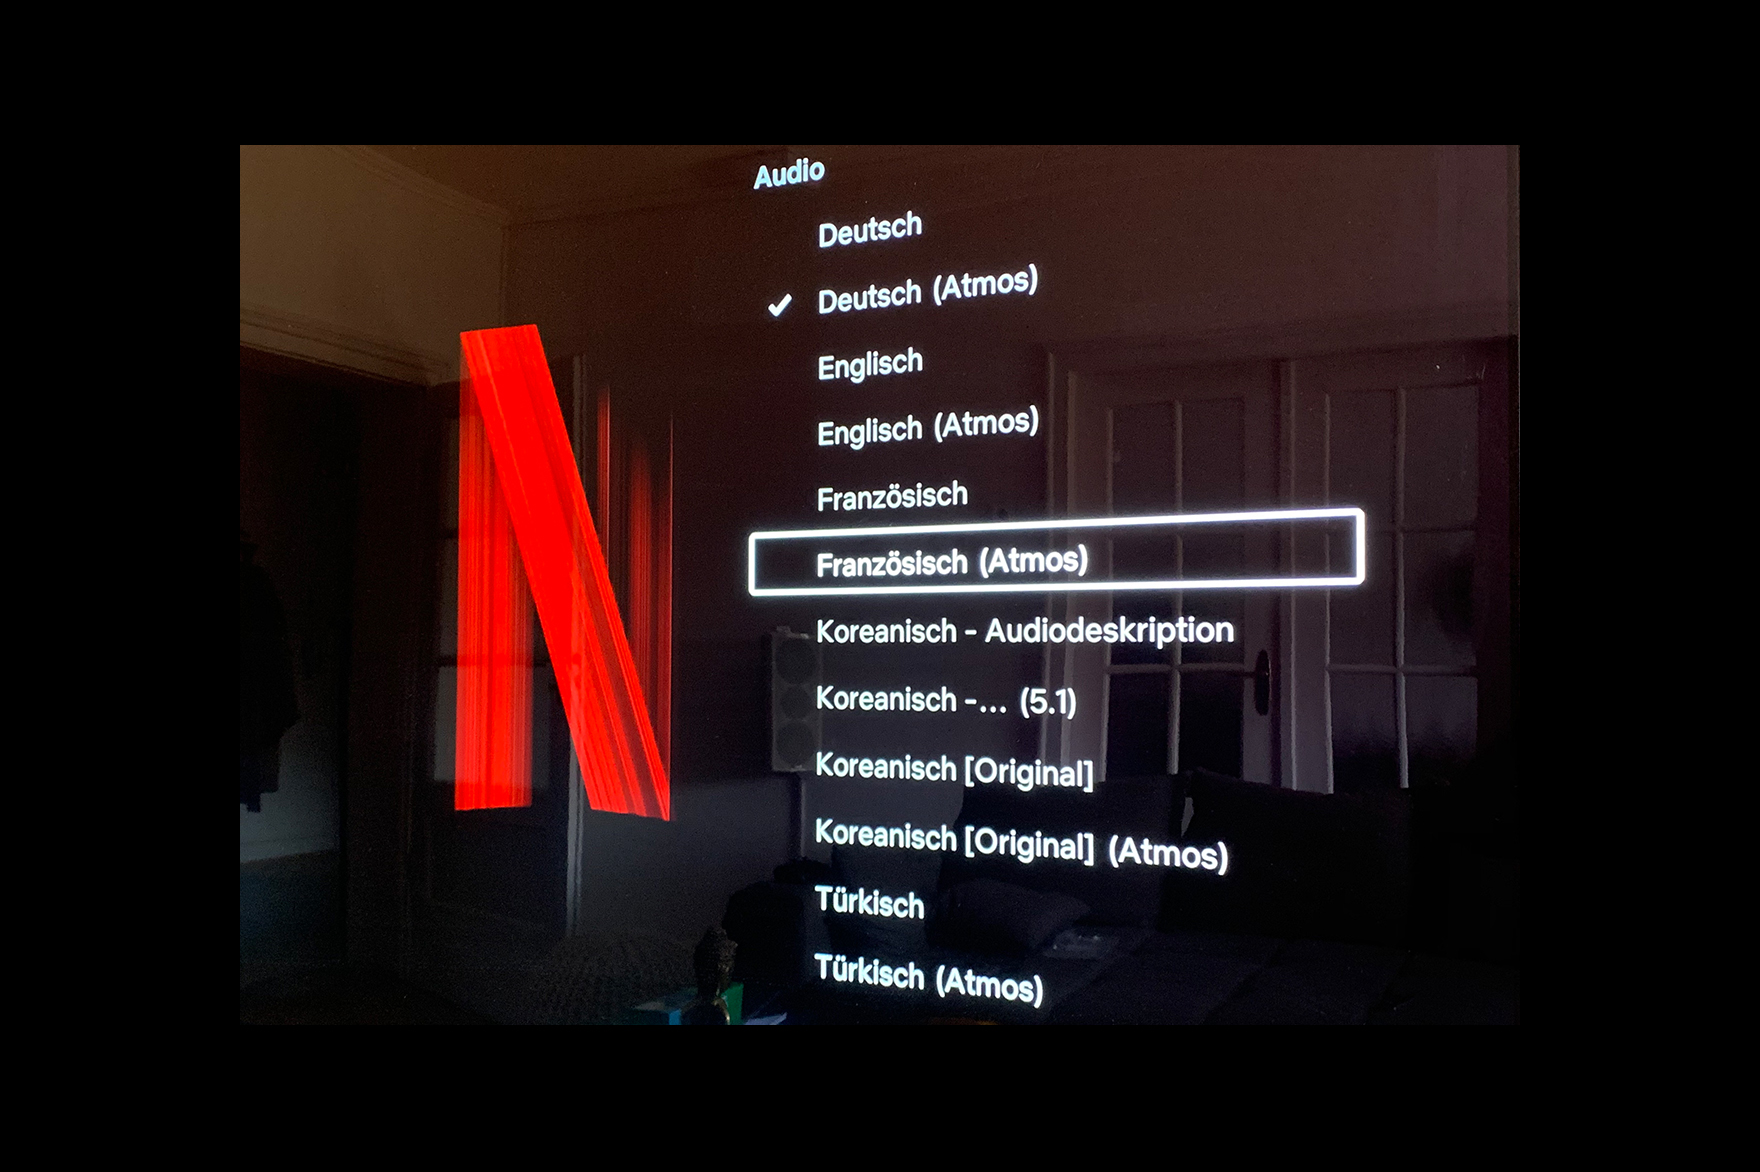 Netflix: Erster Titel mit fünf Sprachen in Dolby Atmos - darunter Deutsch